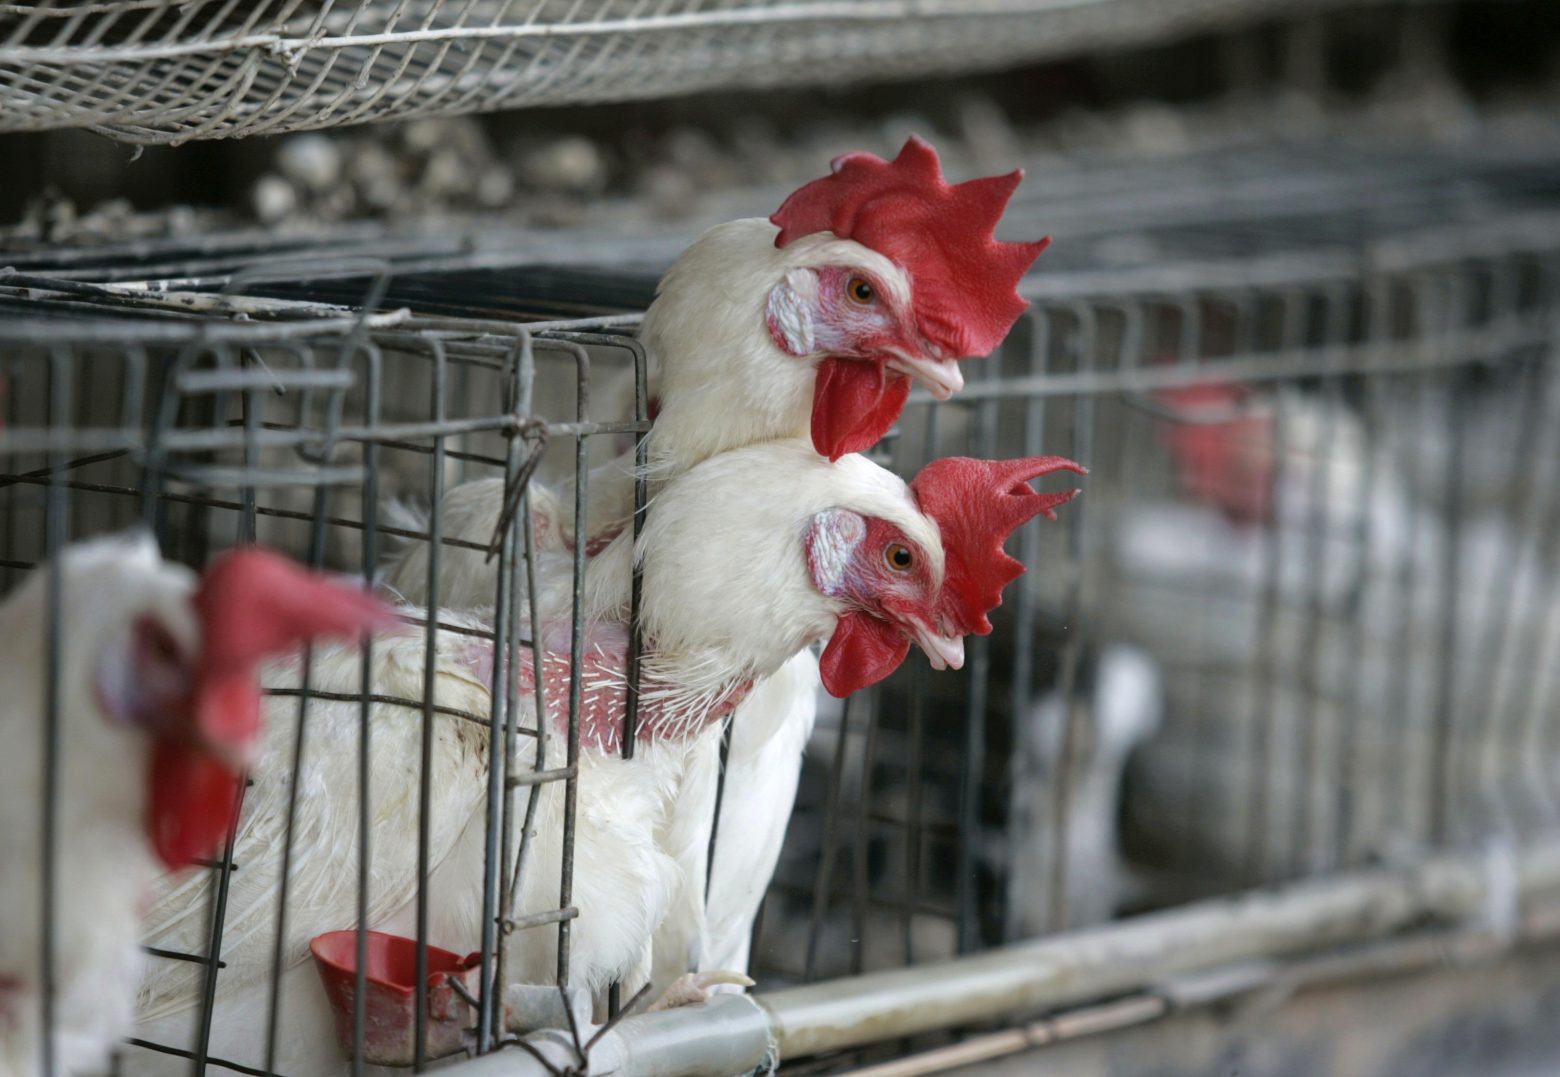 Τέλος στην εκτροφή ζώων σε κλουβιά ζητά έκθεση για λογαριασμό της ΕΕ